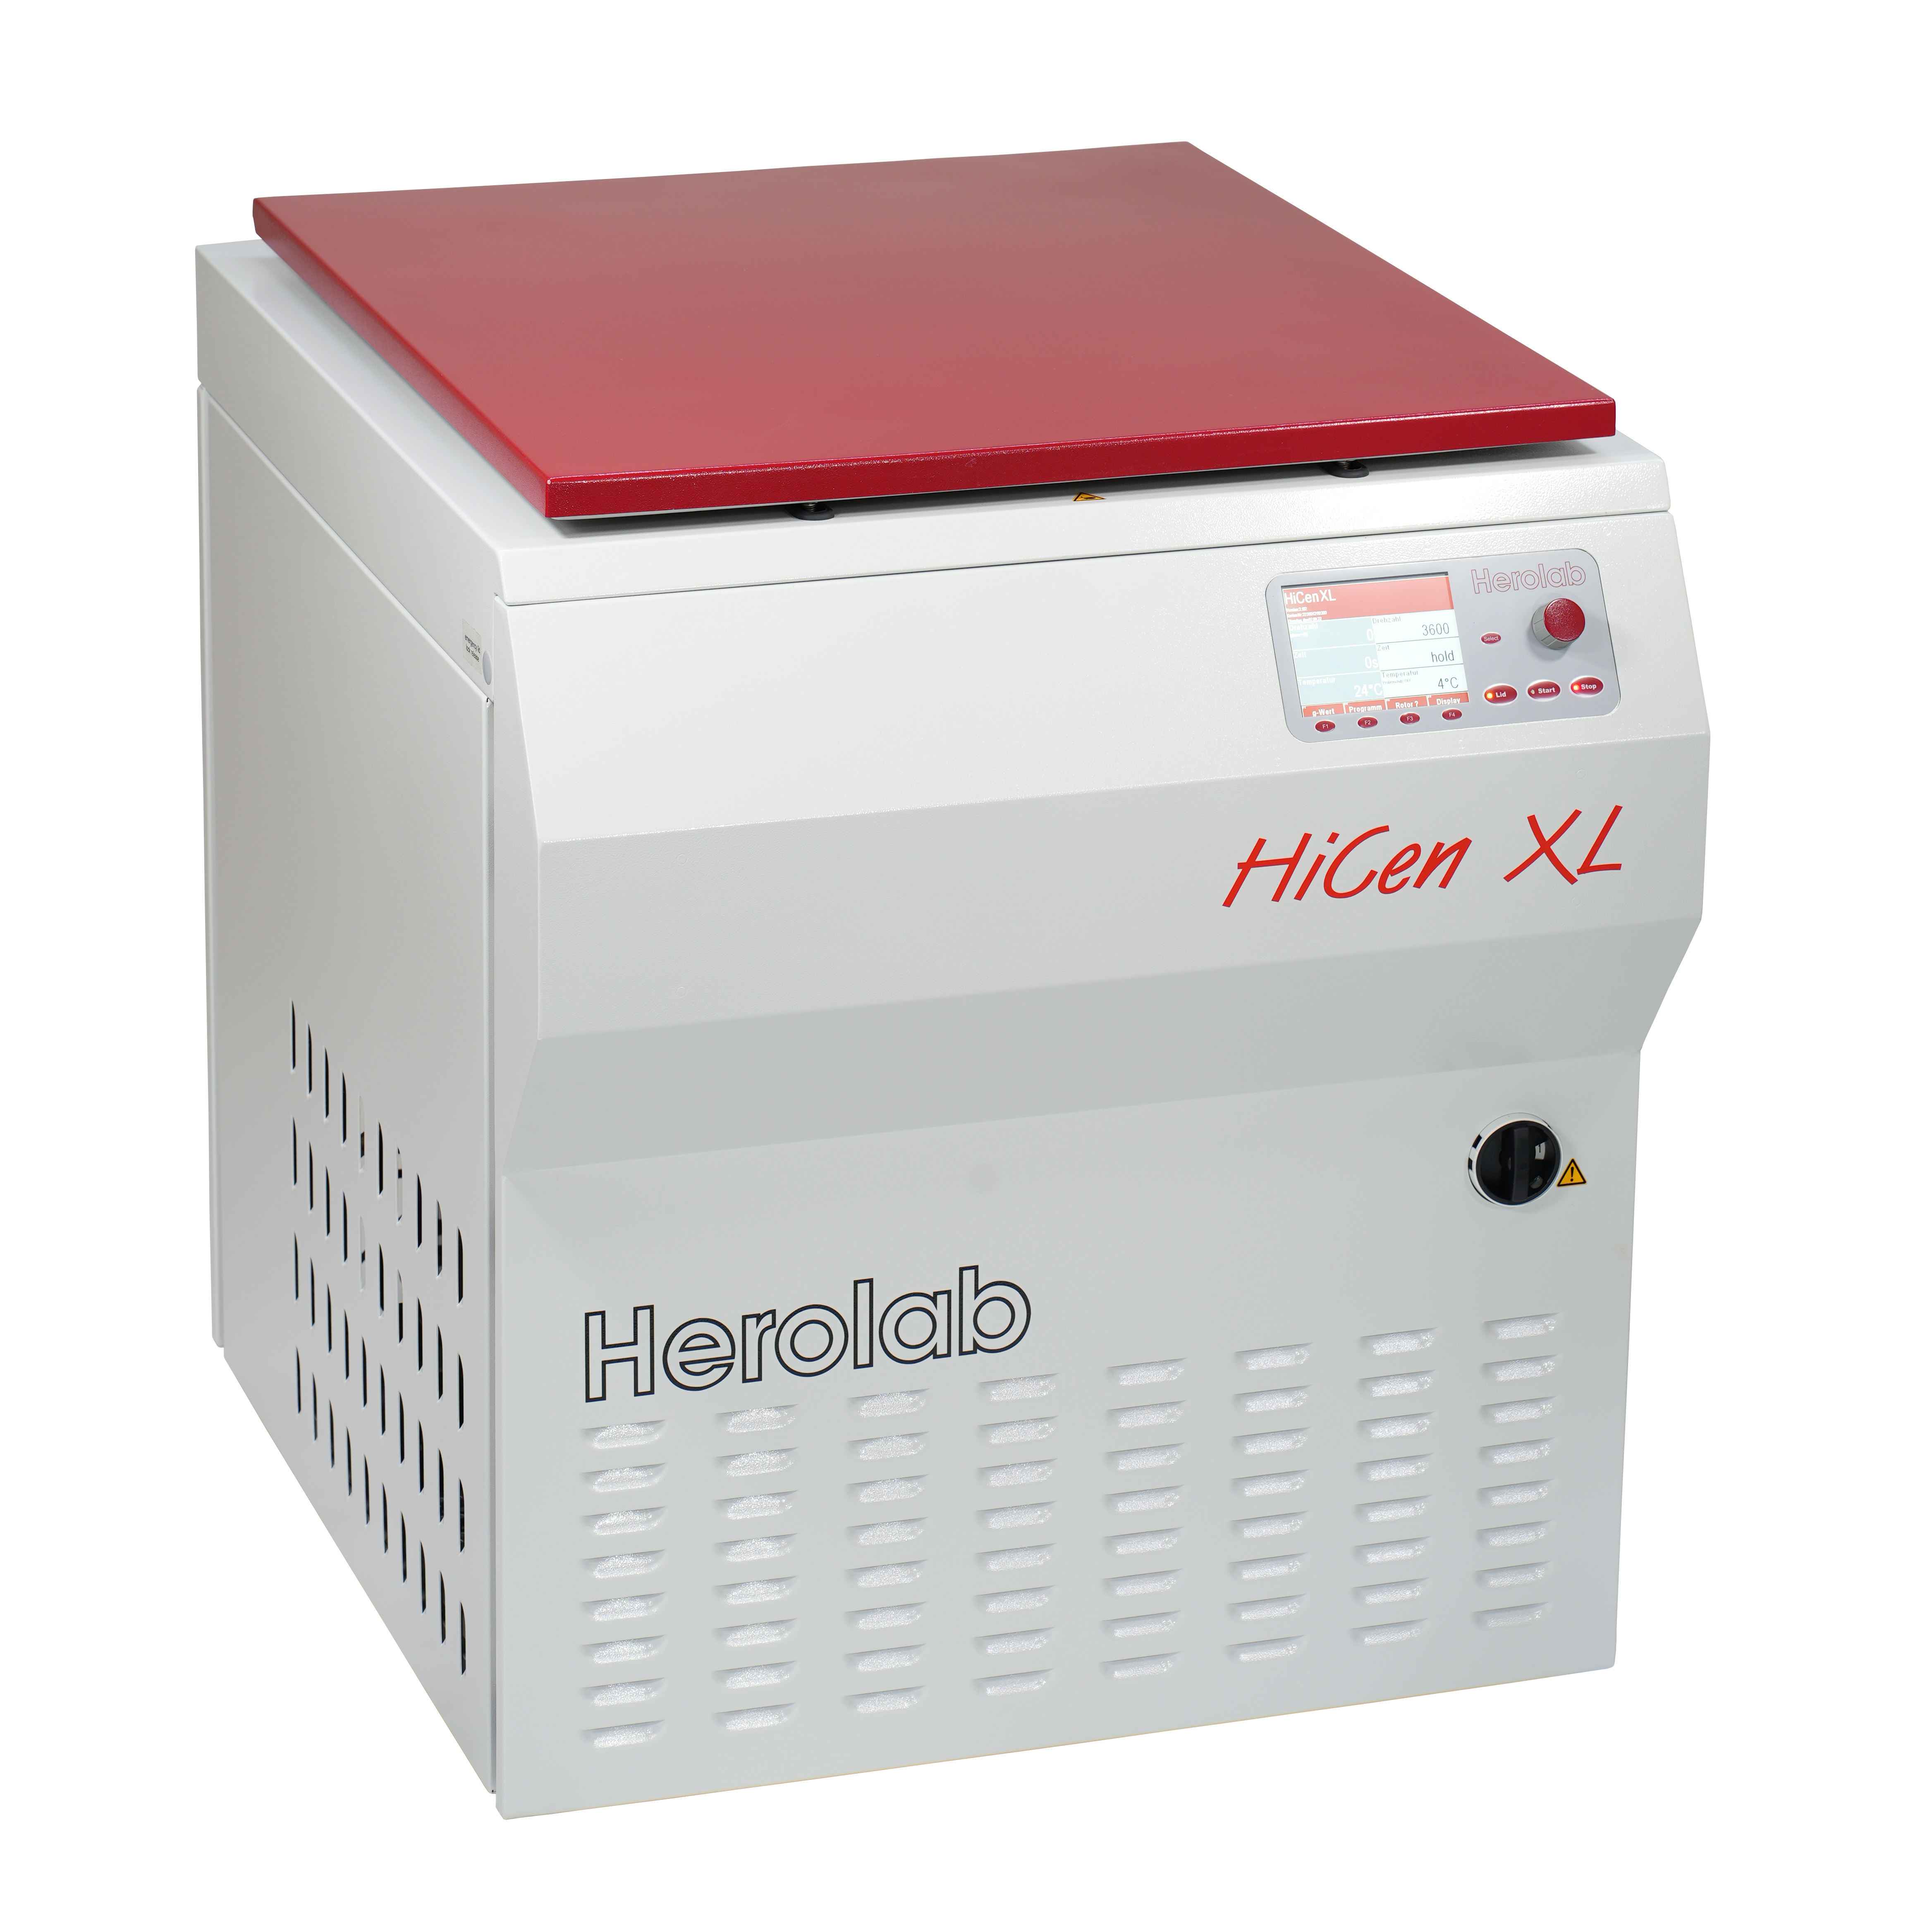 德国Herolab  6L商业化落地式大容量冷冻离心机 HiCen XL